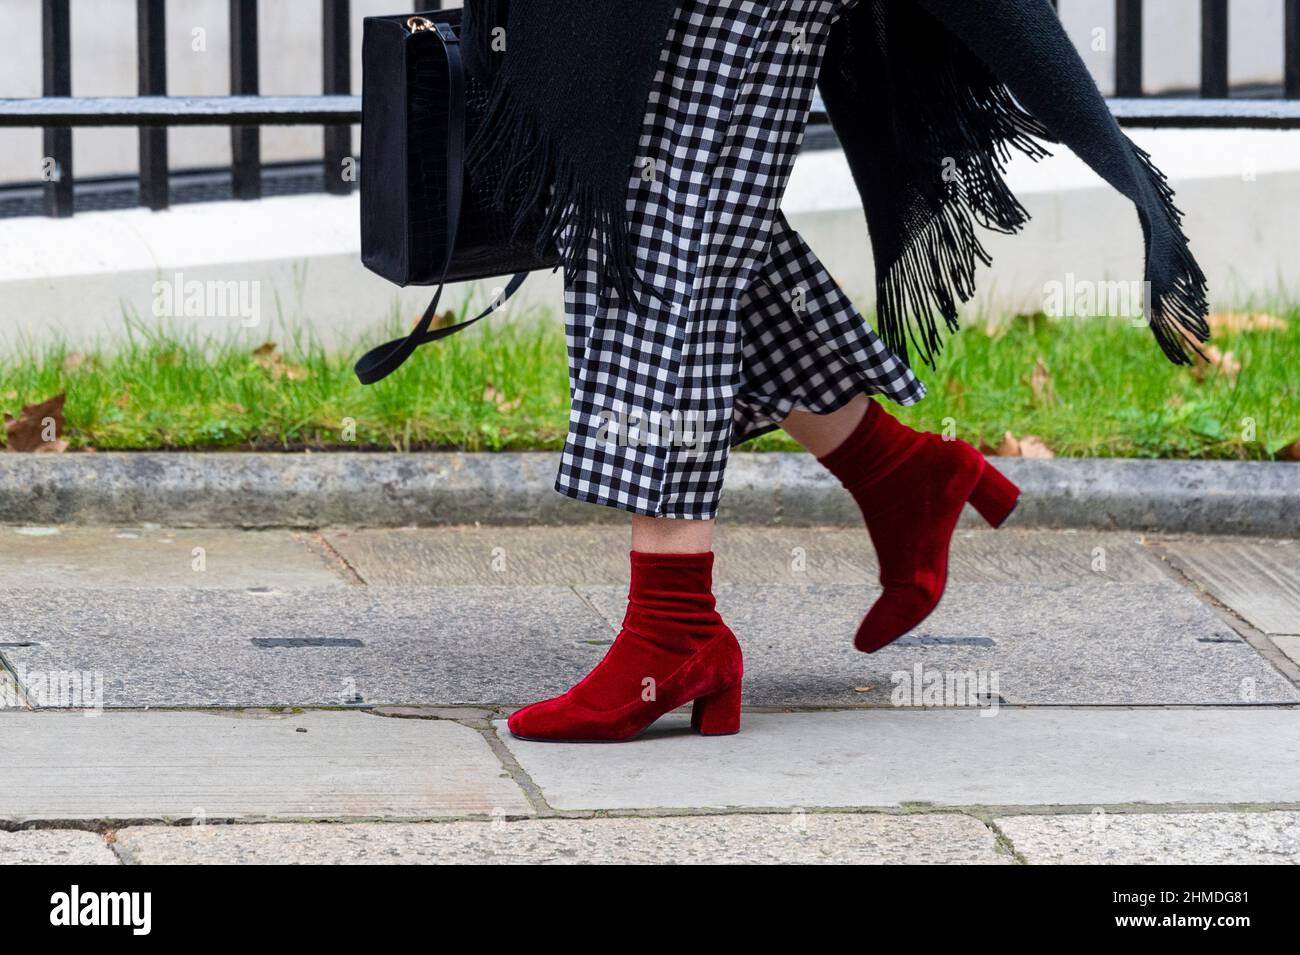 Londres, Reino Unido. 9 de febrero de 2022. Un visitante no identificado llega a Downing Street, trayendo un sentido de la moda con calzado rojo llamativo y pantalones de cuadros blancos y negros. Crédito: Stephen Chung / Alamy Live News Foto de stock